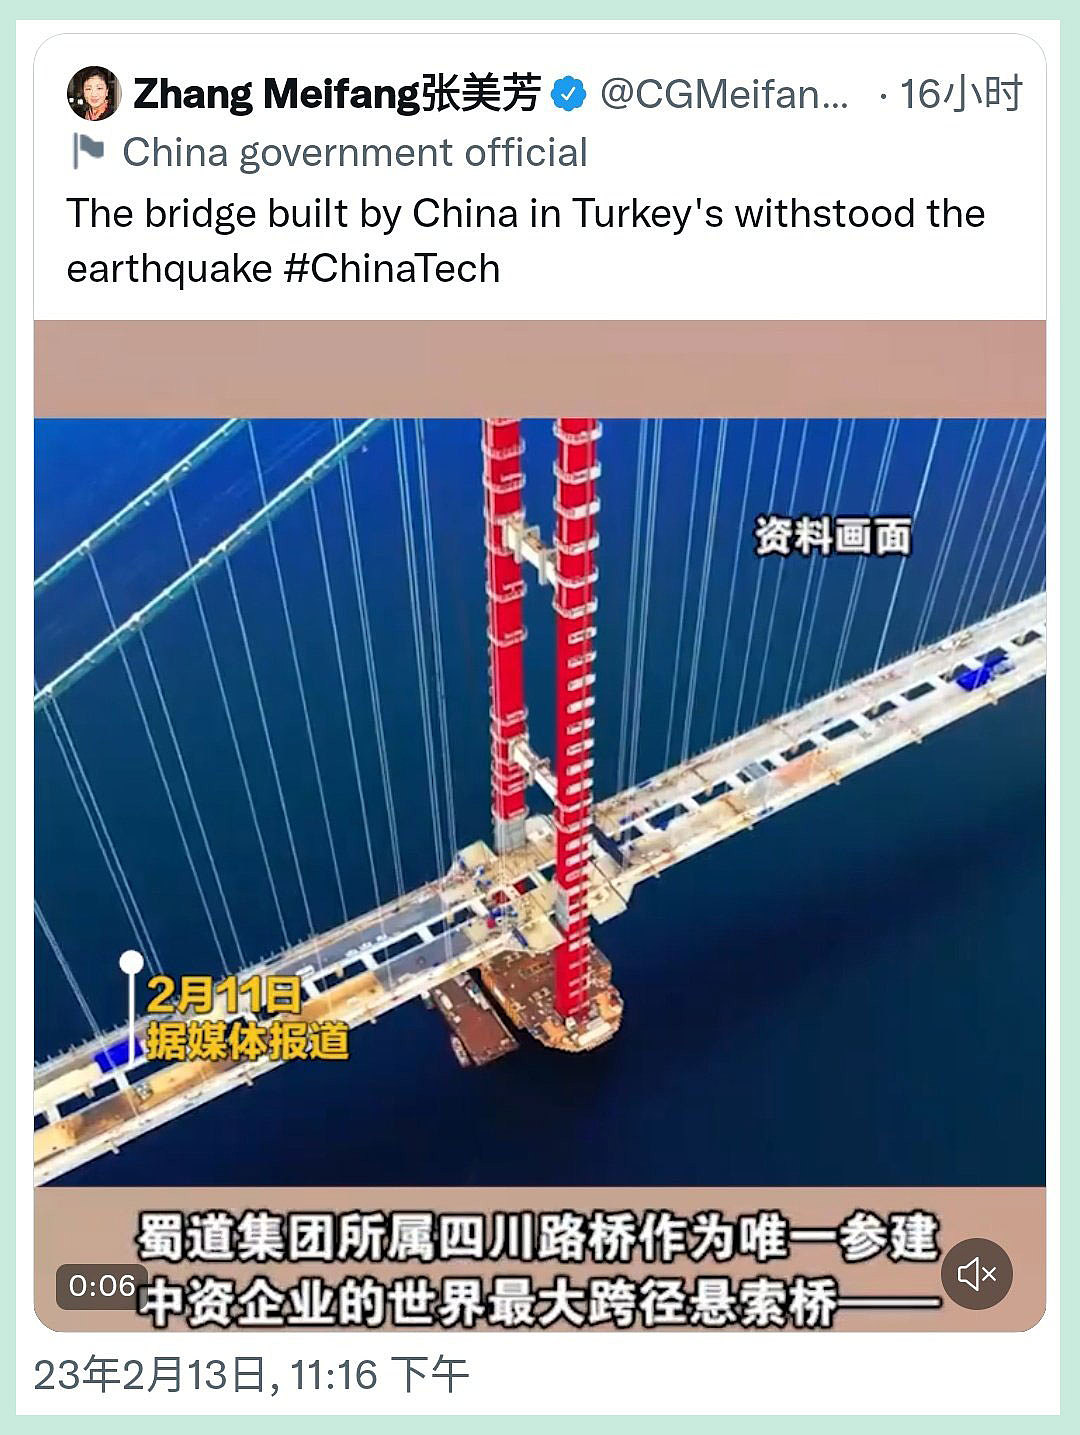 中国驻贝尔法斯特总领事张美芳在推特上吹捧中国制大桥在土耳其地震中不倒，被发现是假消息后删除。(网路截图)